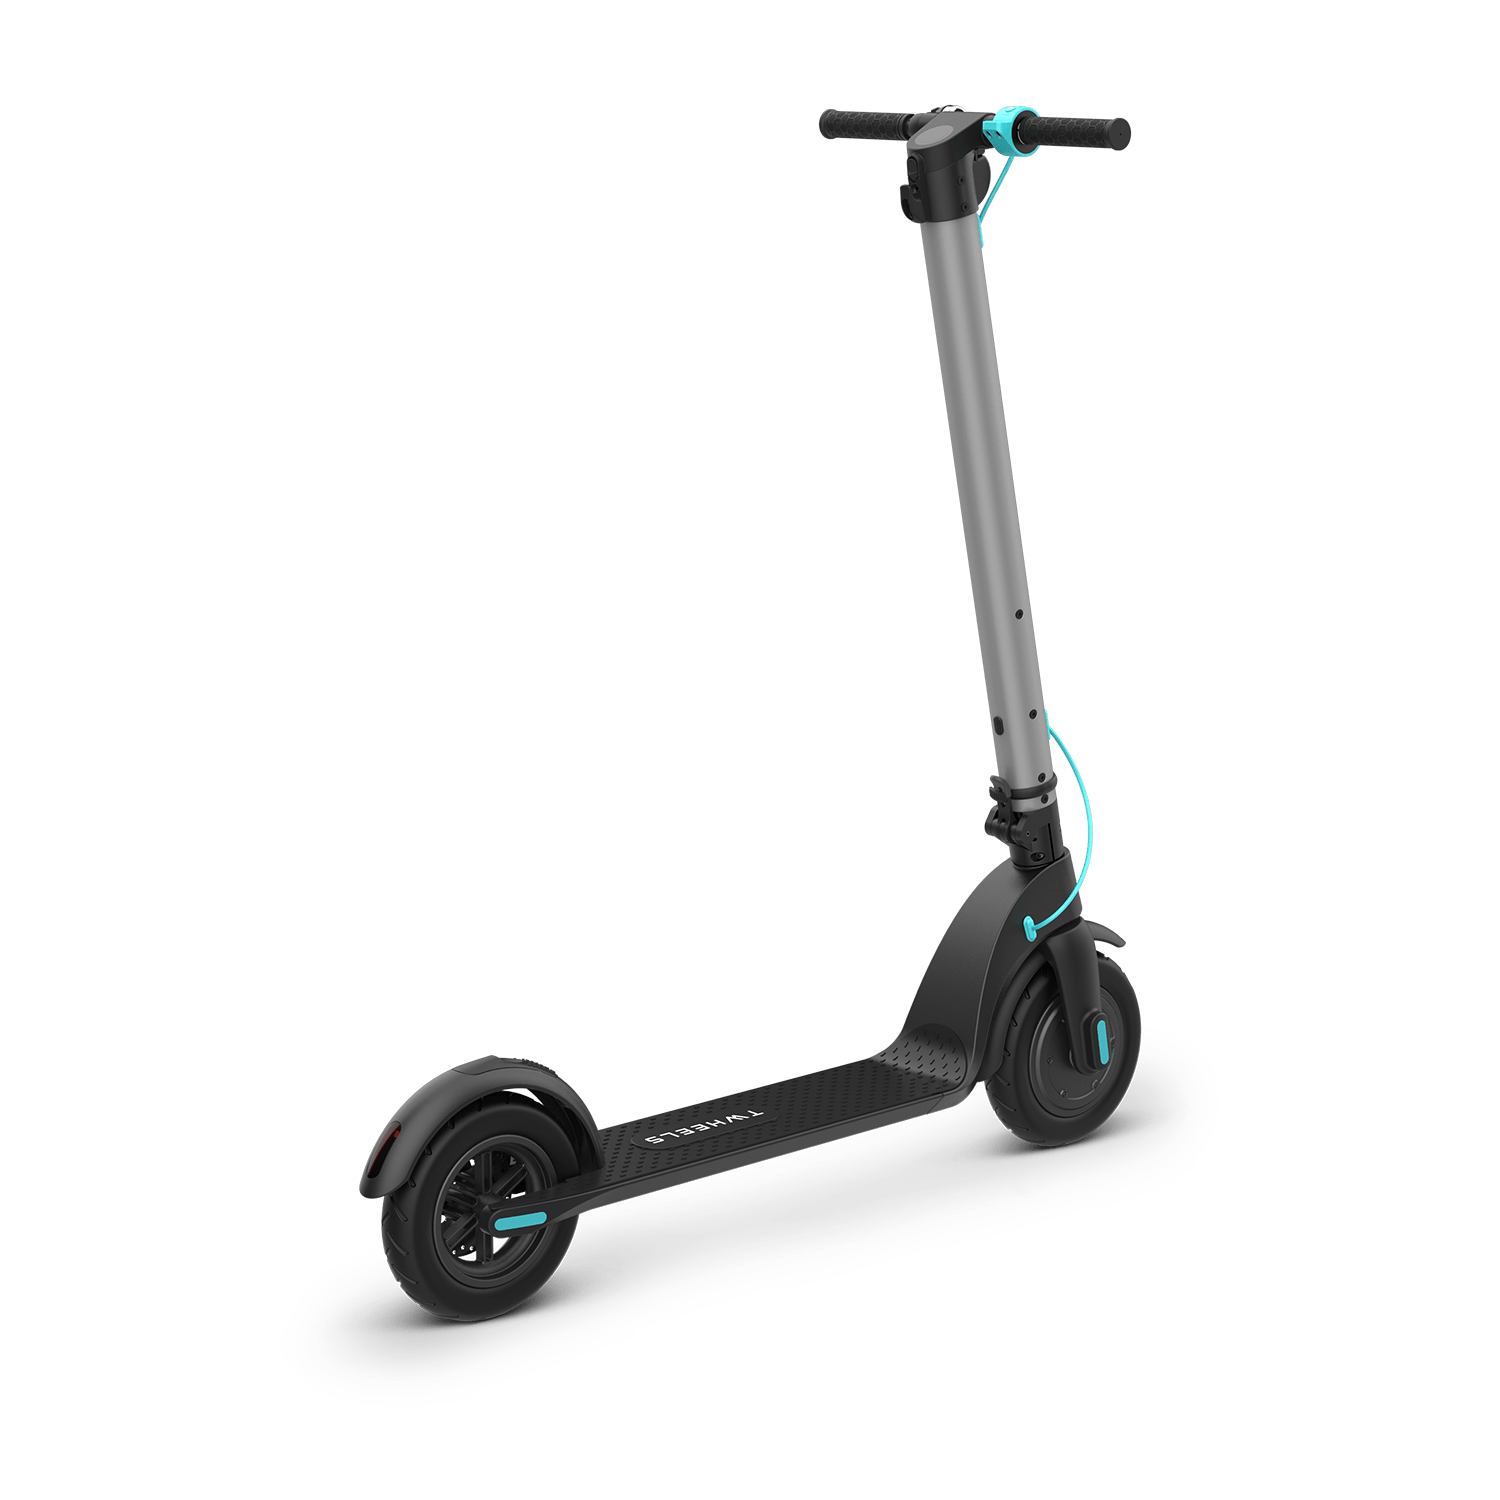 Dein Zweiradprofi für E-Roller, E-Scooter & Zubehör